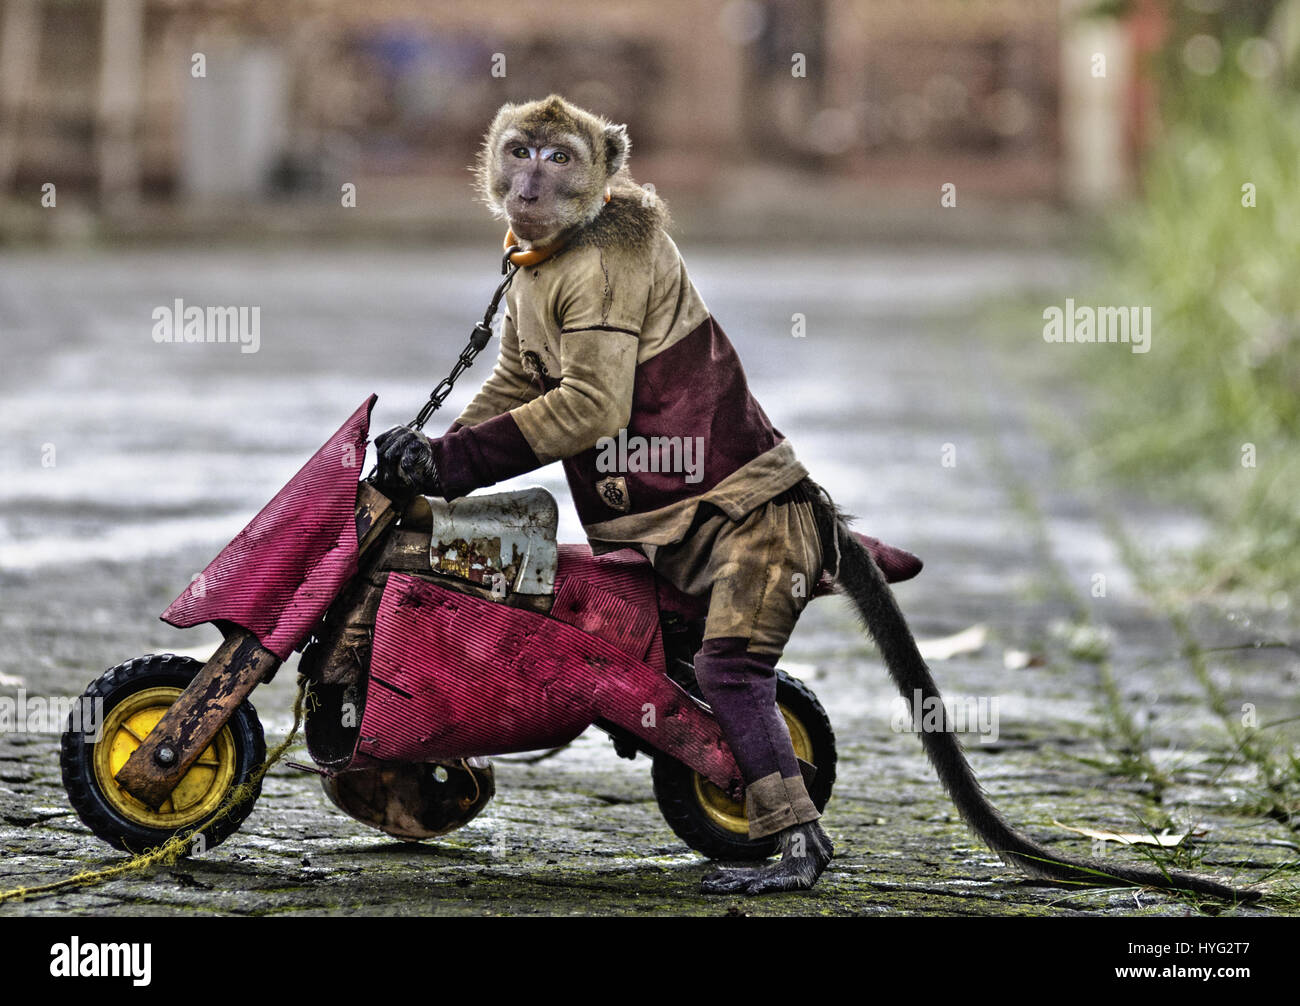 Un macaque est faite pour rouler en moto de jouets. Forcés de porter des  masques, tirer et brouettes même monter une mini-moto sur la rue pouvait  ces pauvres macaques être les personnes